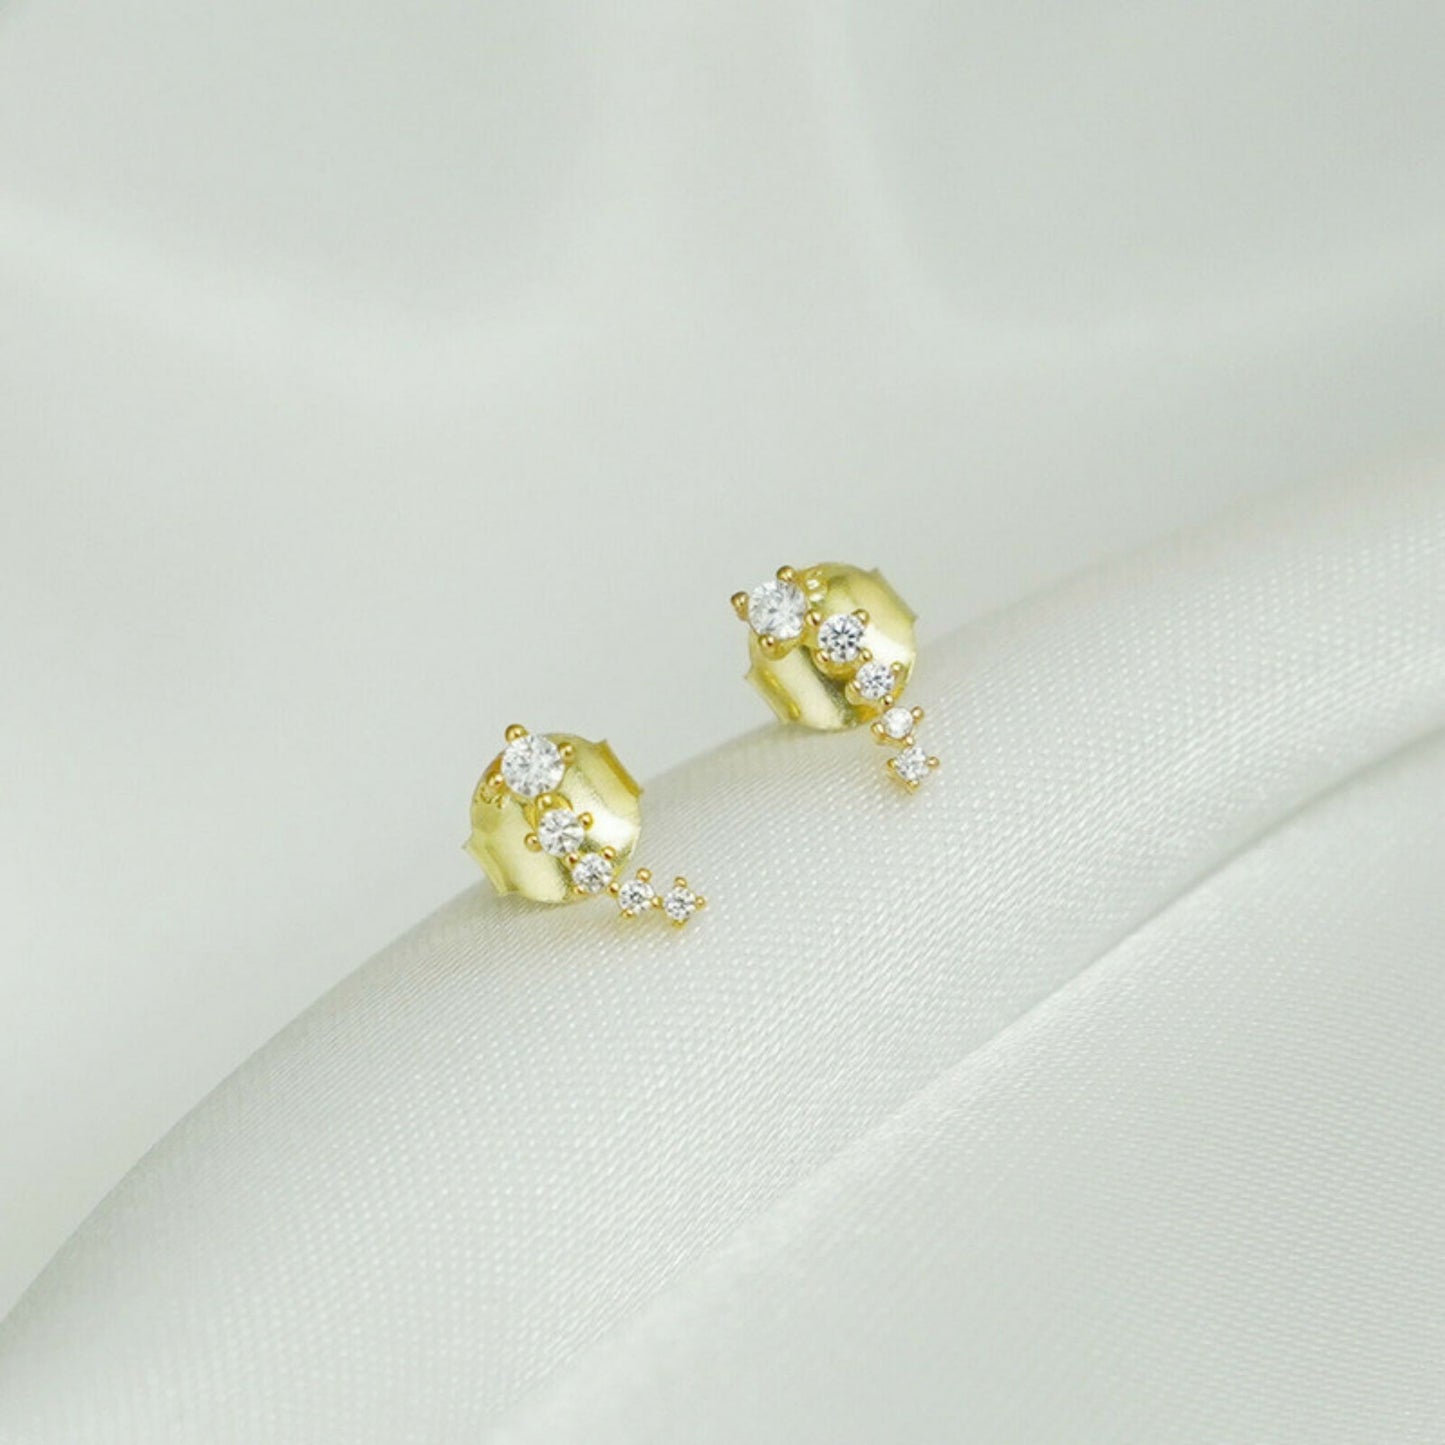 Minimalist Gold Stud Earrings on Sterling Silver with CZ Star Links - sugarkittenlondon